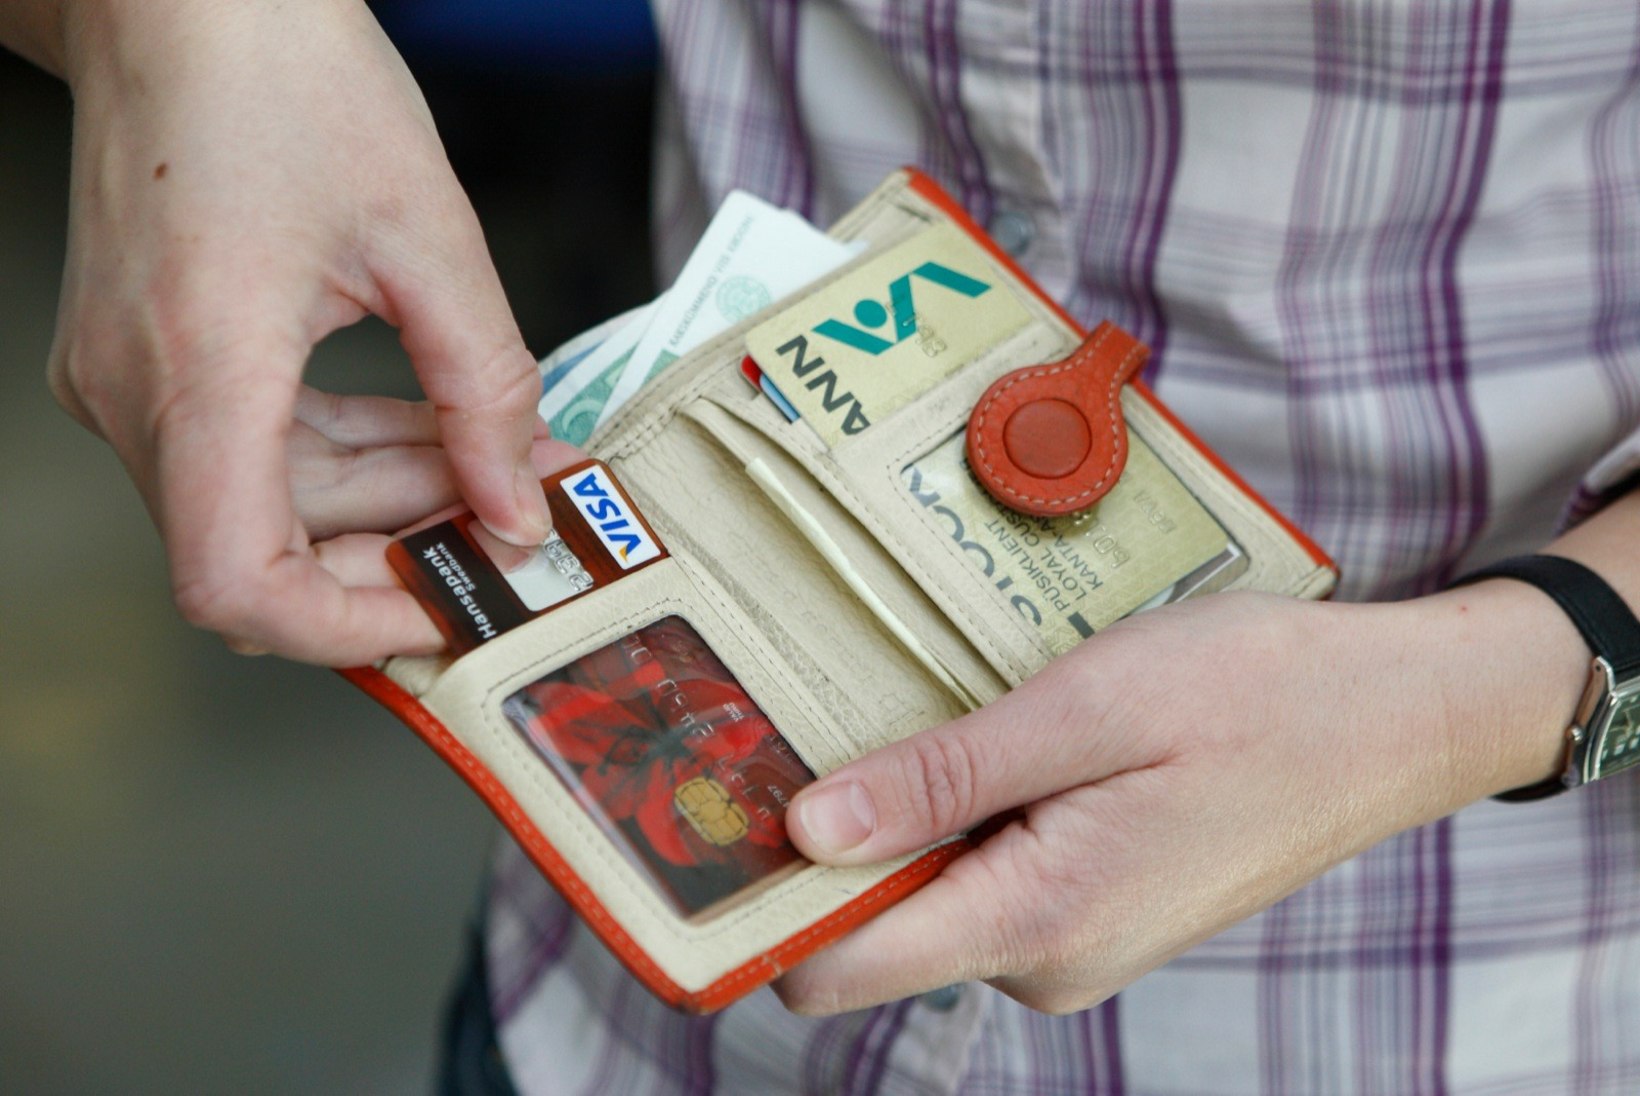 KOODID PEITU! Pikanäpumees pätsas vanataadi pangakaardilt 640 eurot sularaha